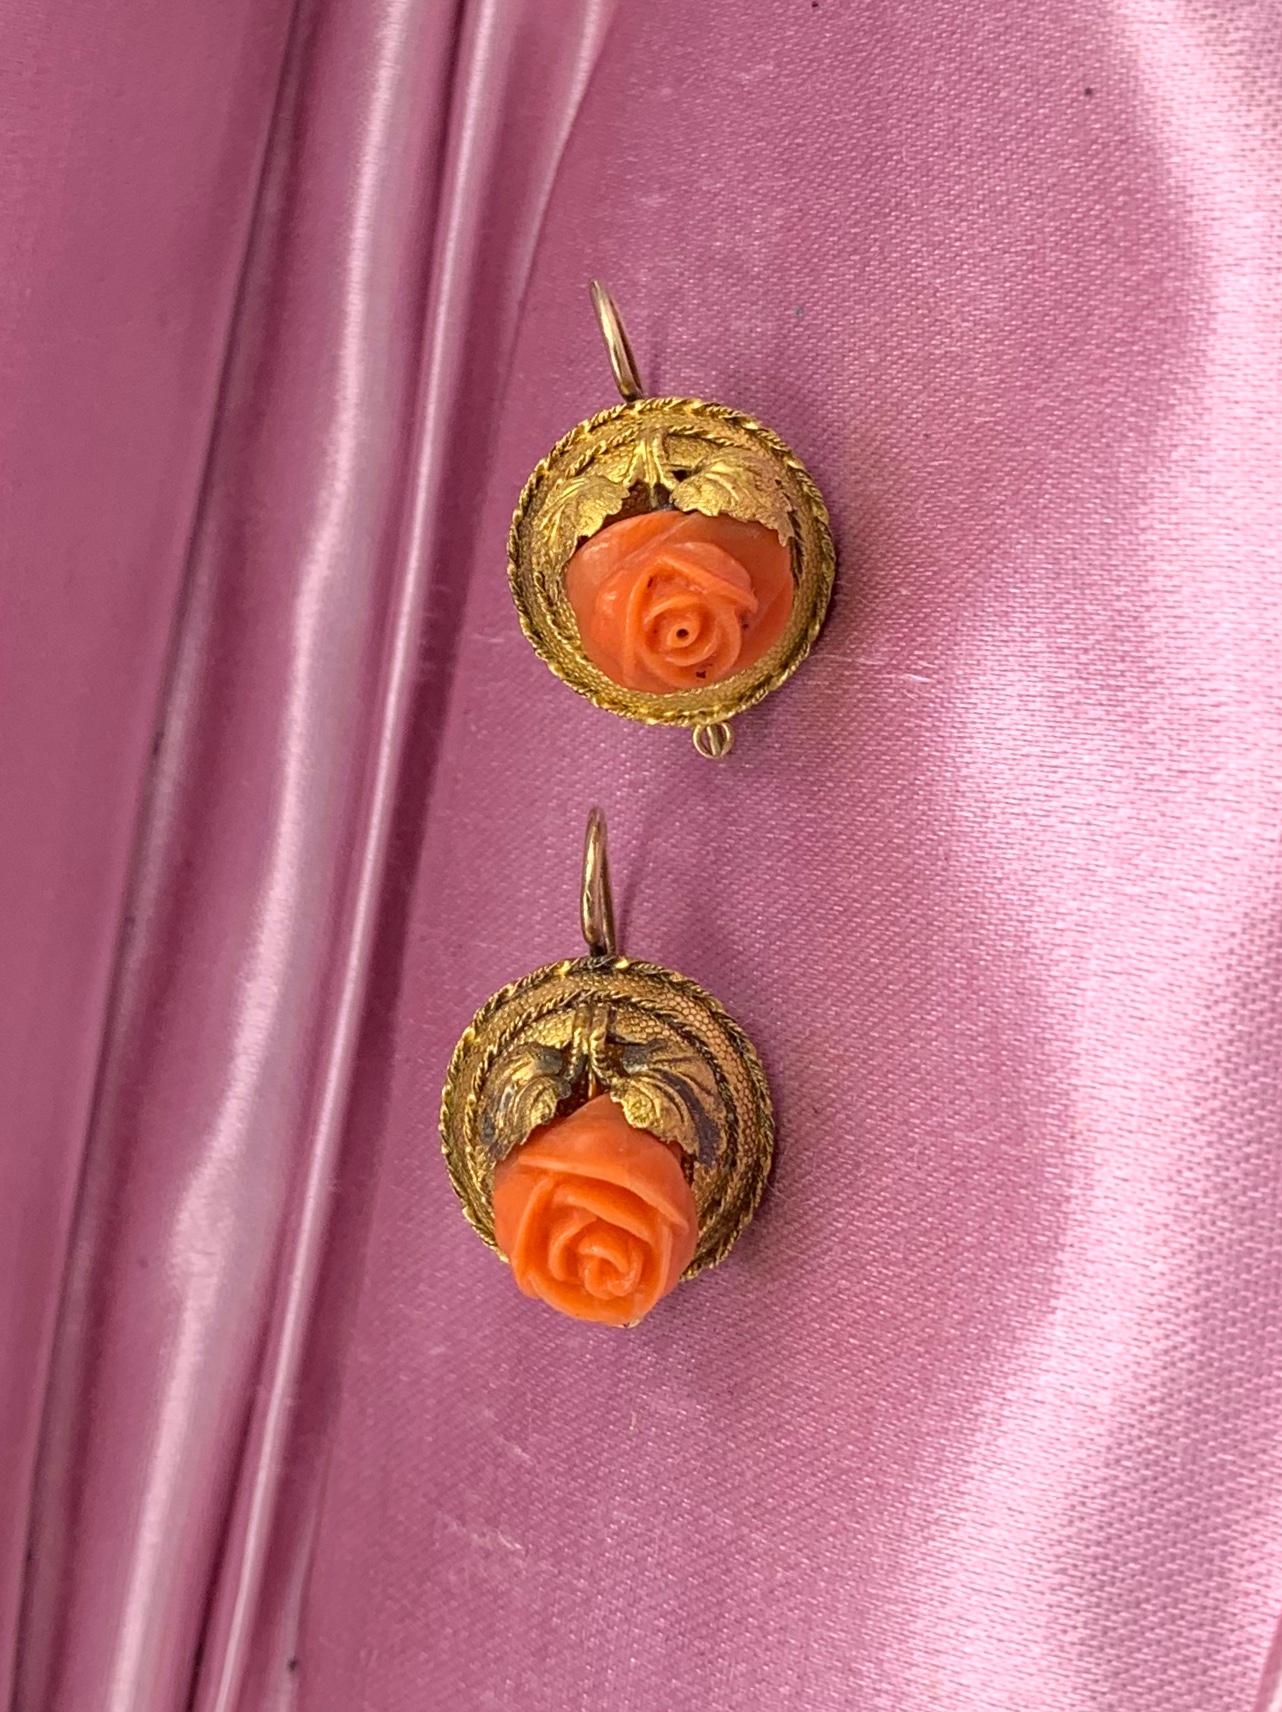 Une paire rare de boucles d'oreilles victoriennes en or 14 carats, de style néo-trusque, avec des roses de corail.  Les boucles d'oreilles sont ornées de fleurs roses tridimensionnelles sculptées à la main dans du corail saumon naturel.  La